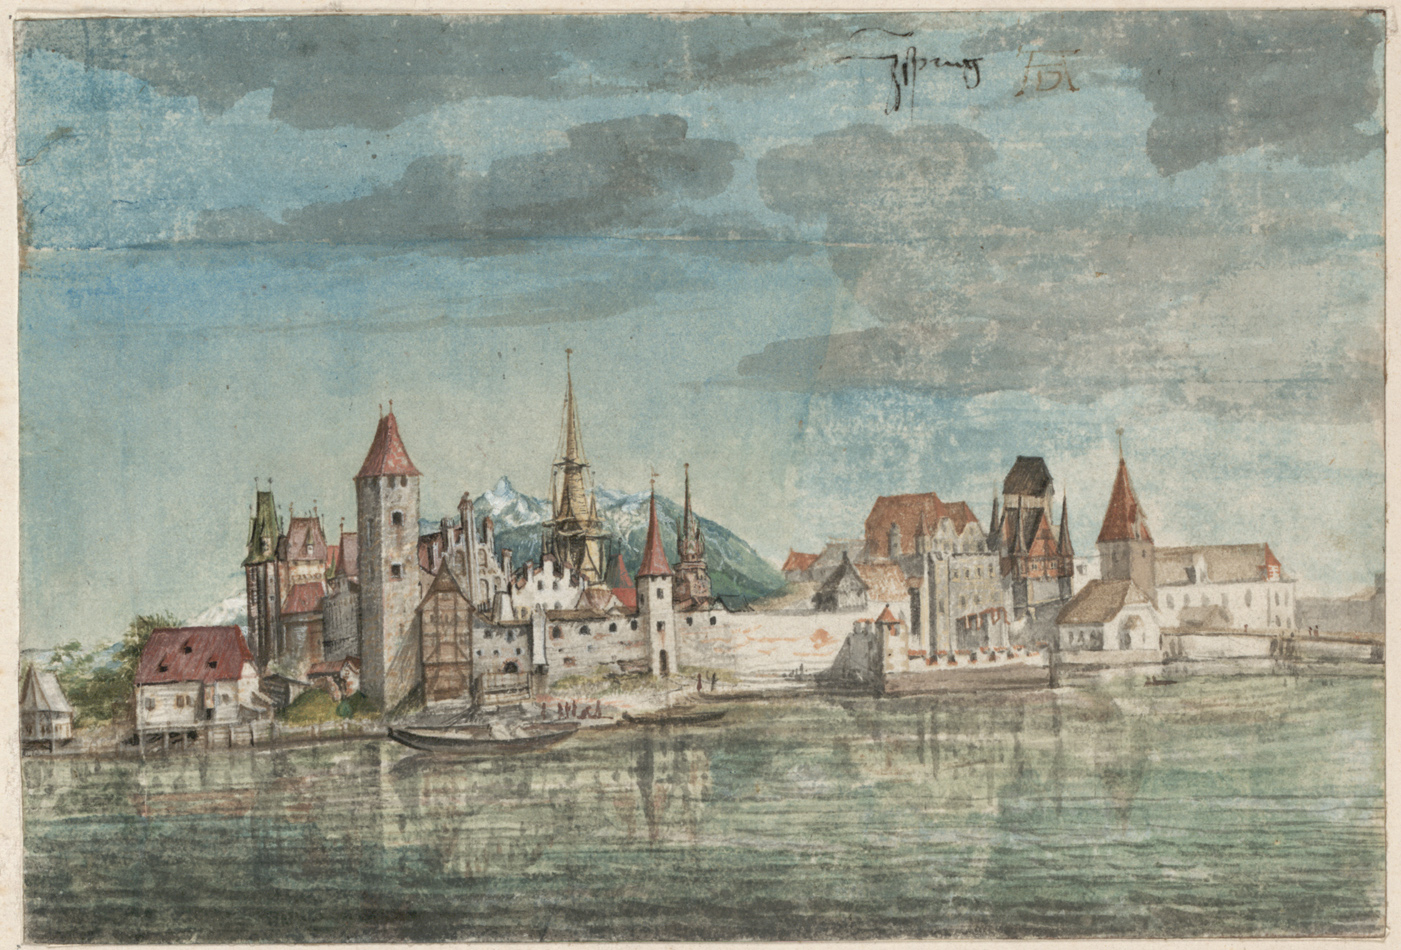 Albrecht Dürer - Innsbruck von Norden: Die Altstadt mit Dom und Stadtturm von 1495, Quelle: Wikipedia Dürer